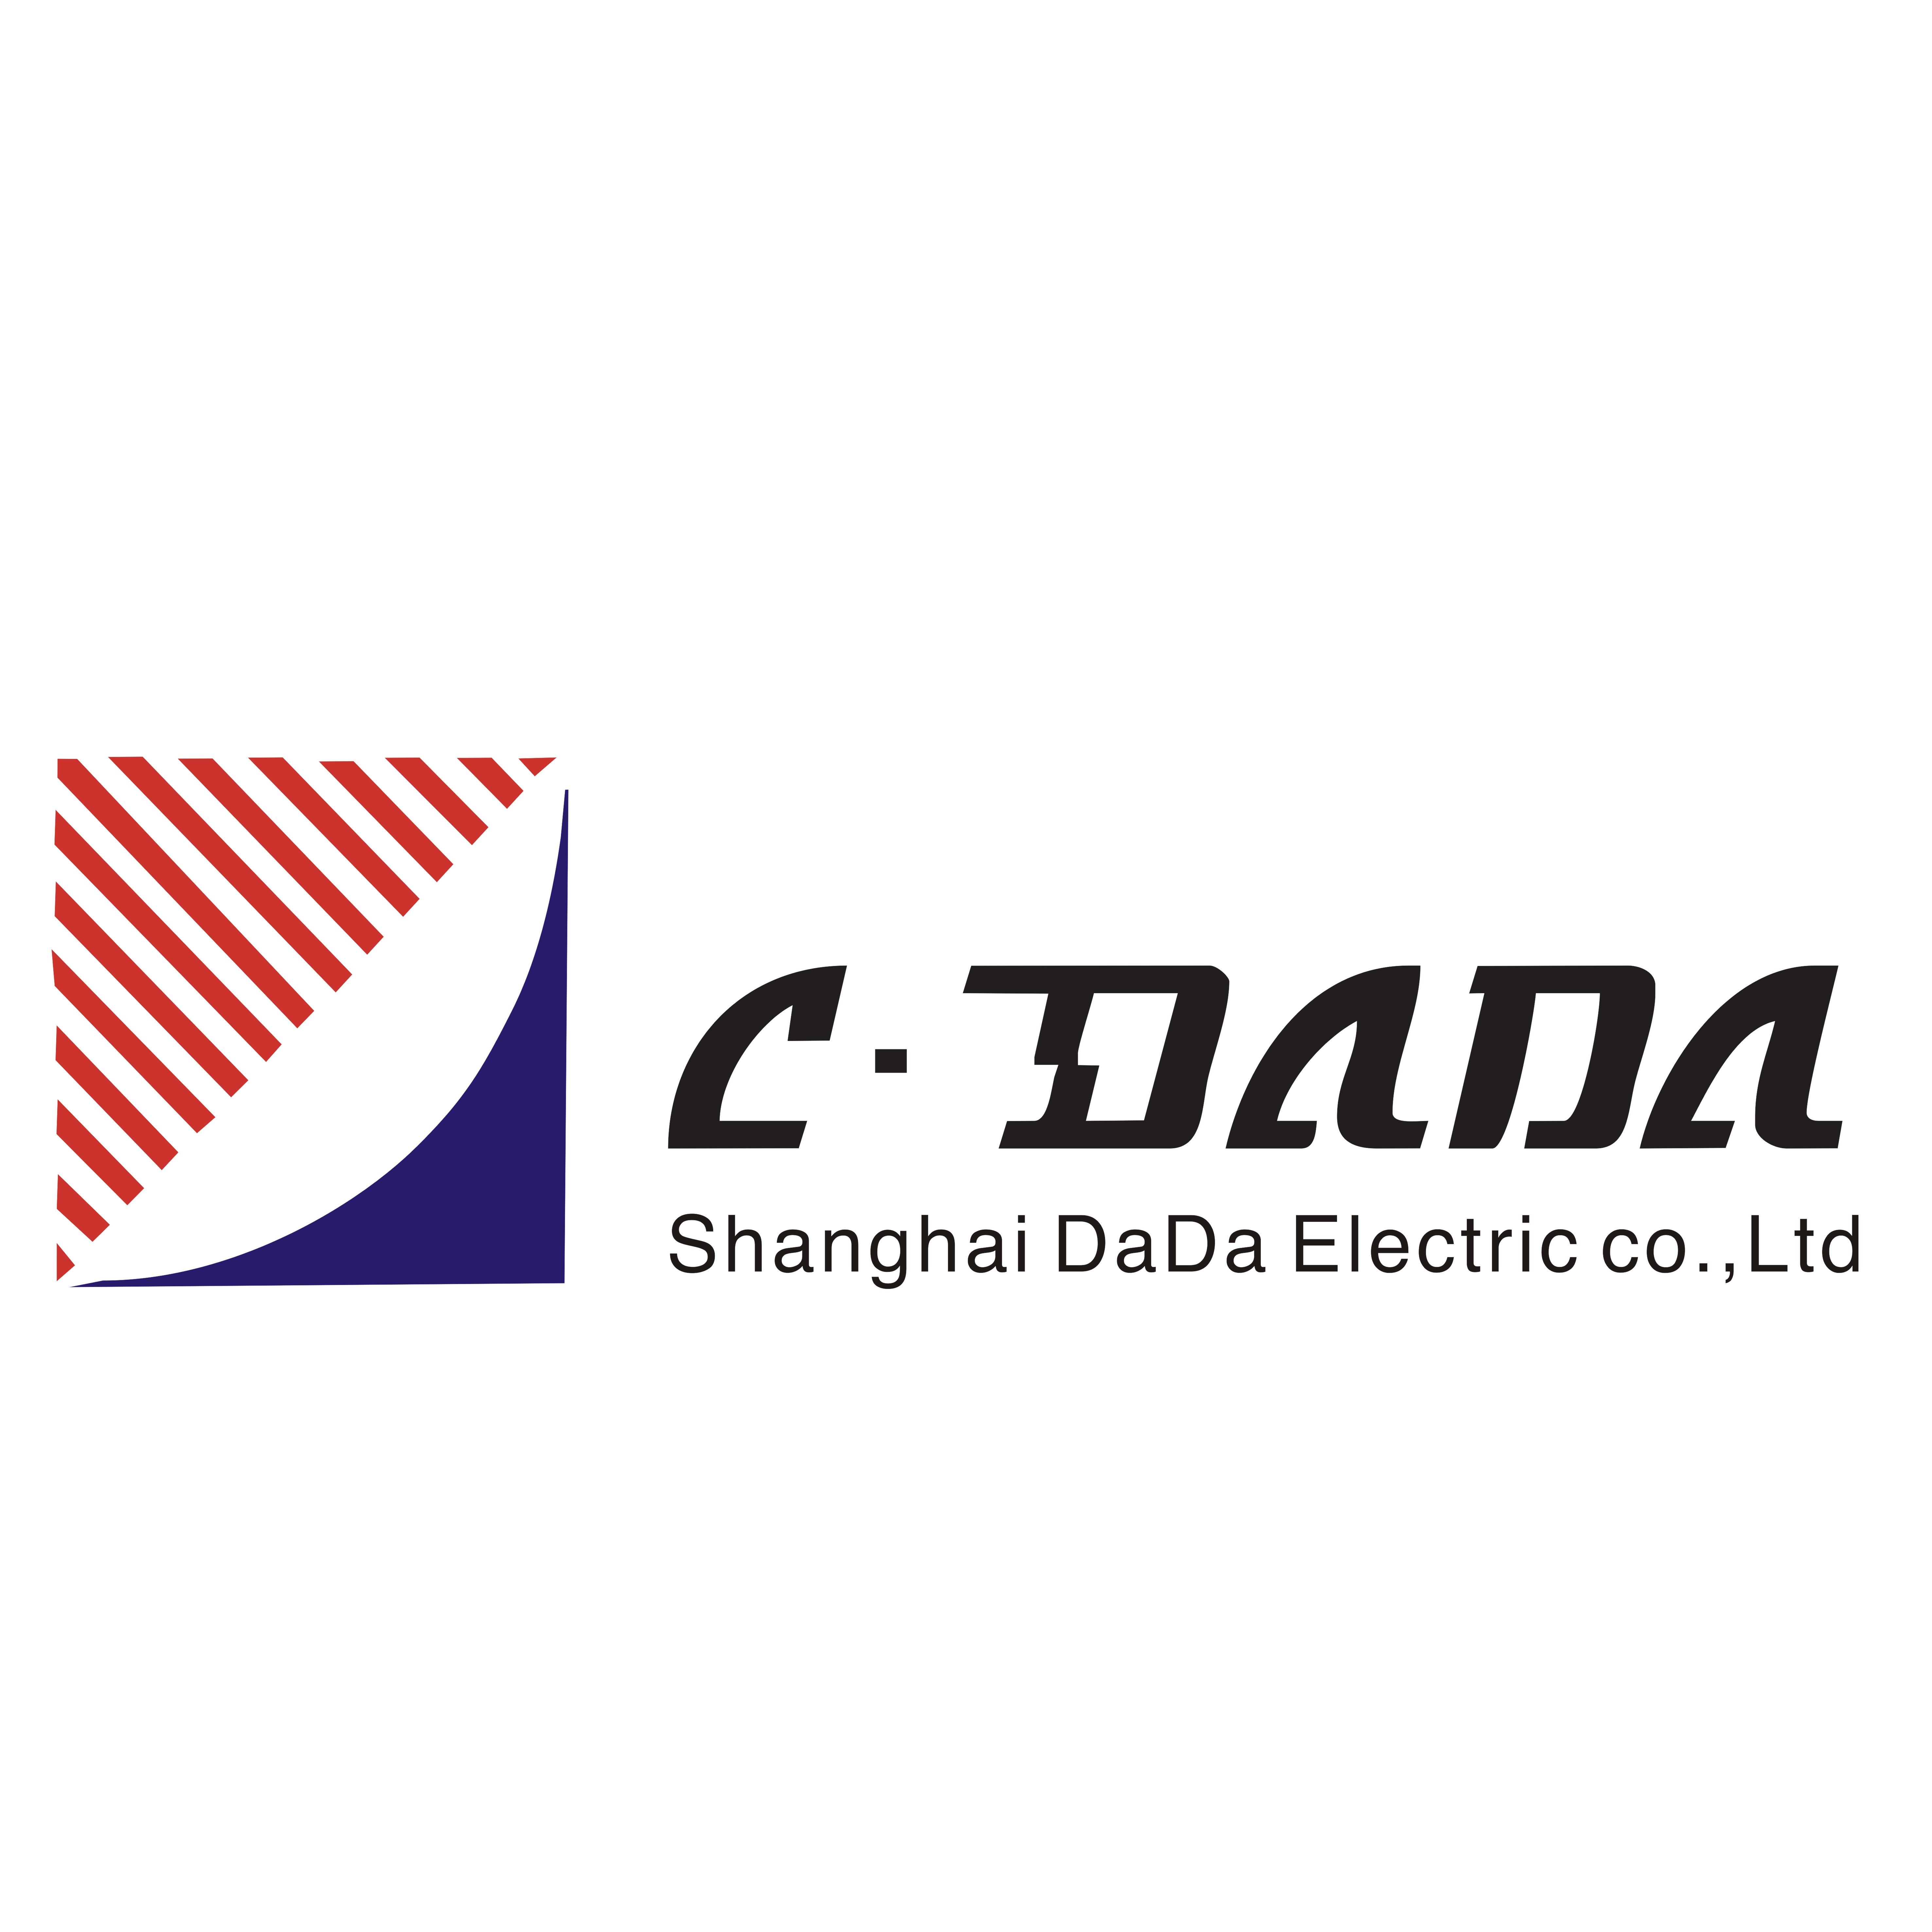 SHANGHAI DADA ELECTRIC CO.,LTD